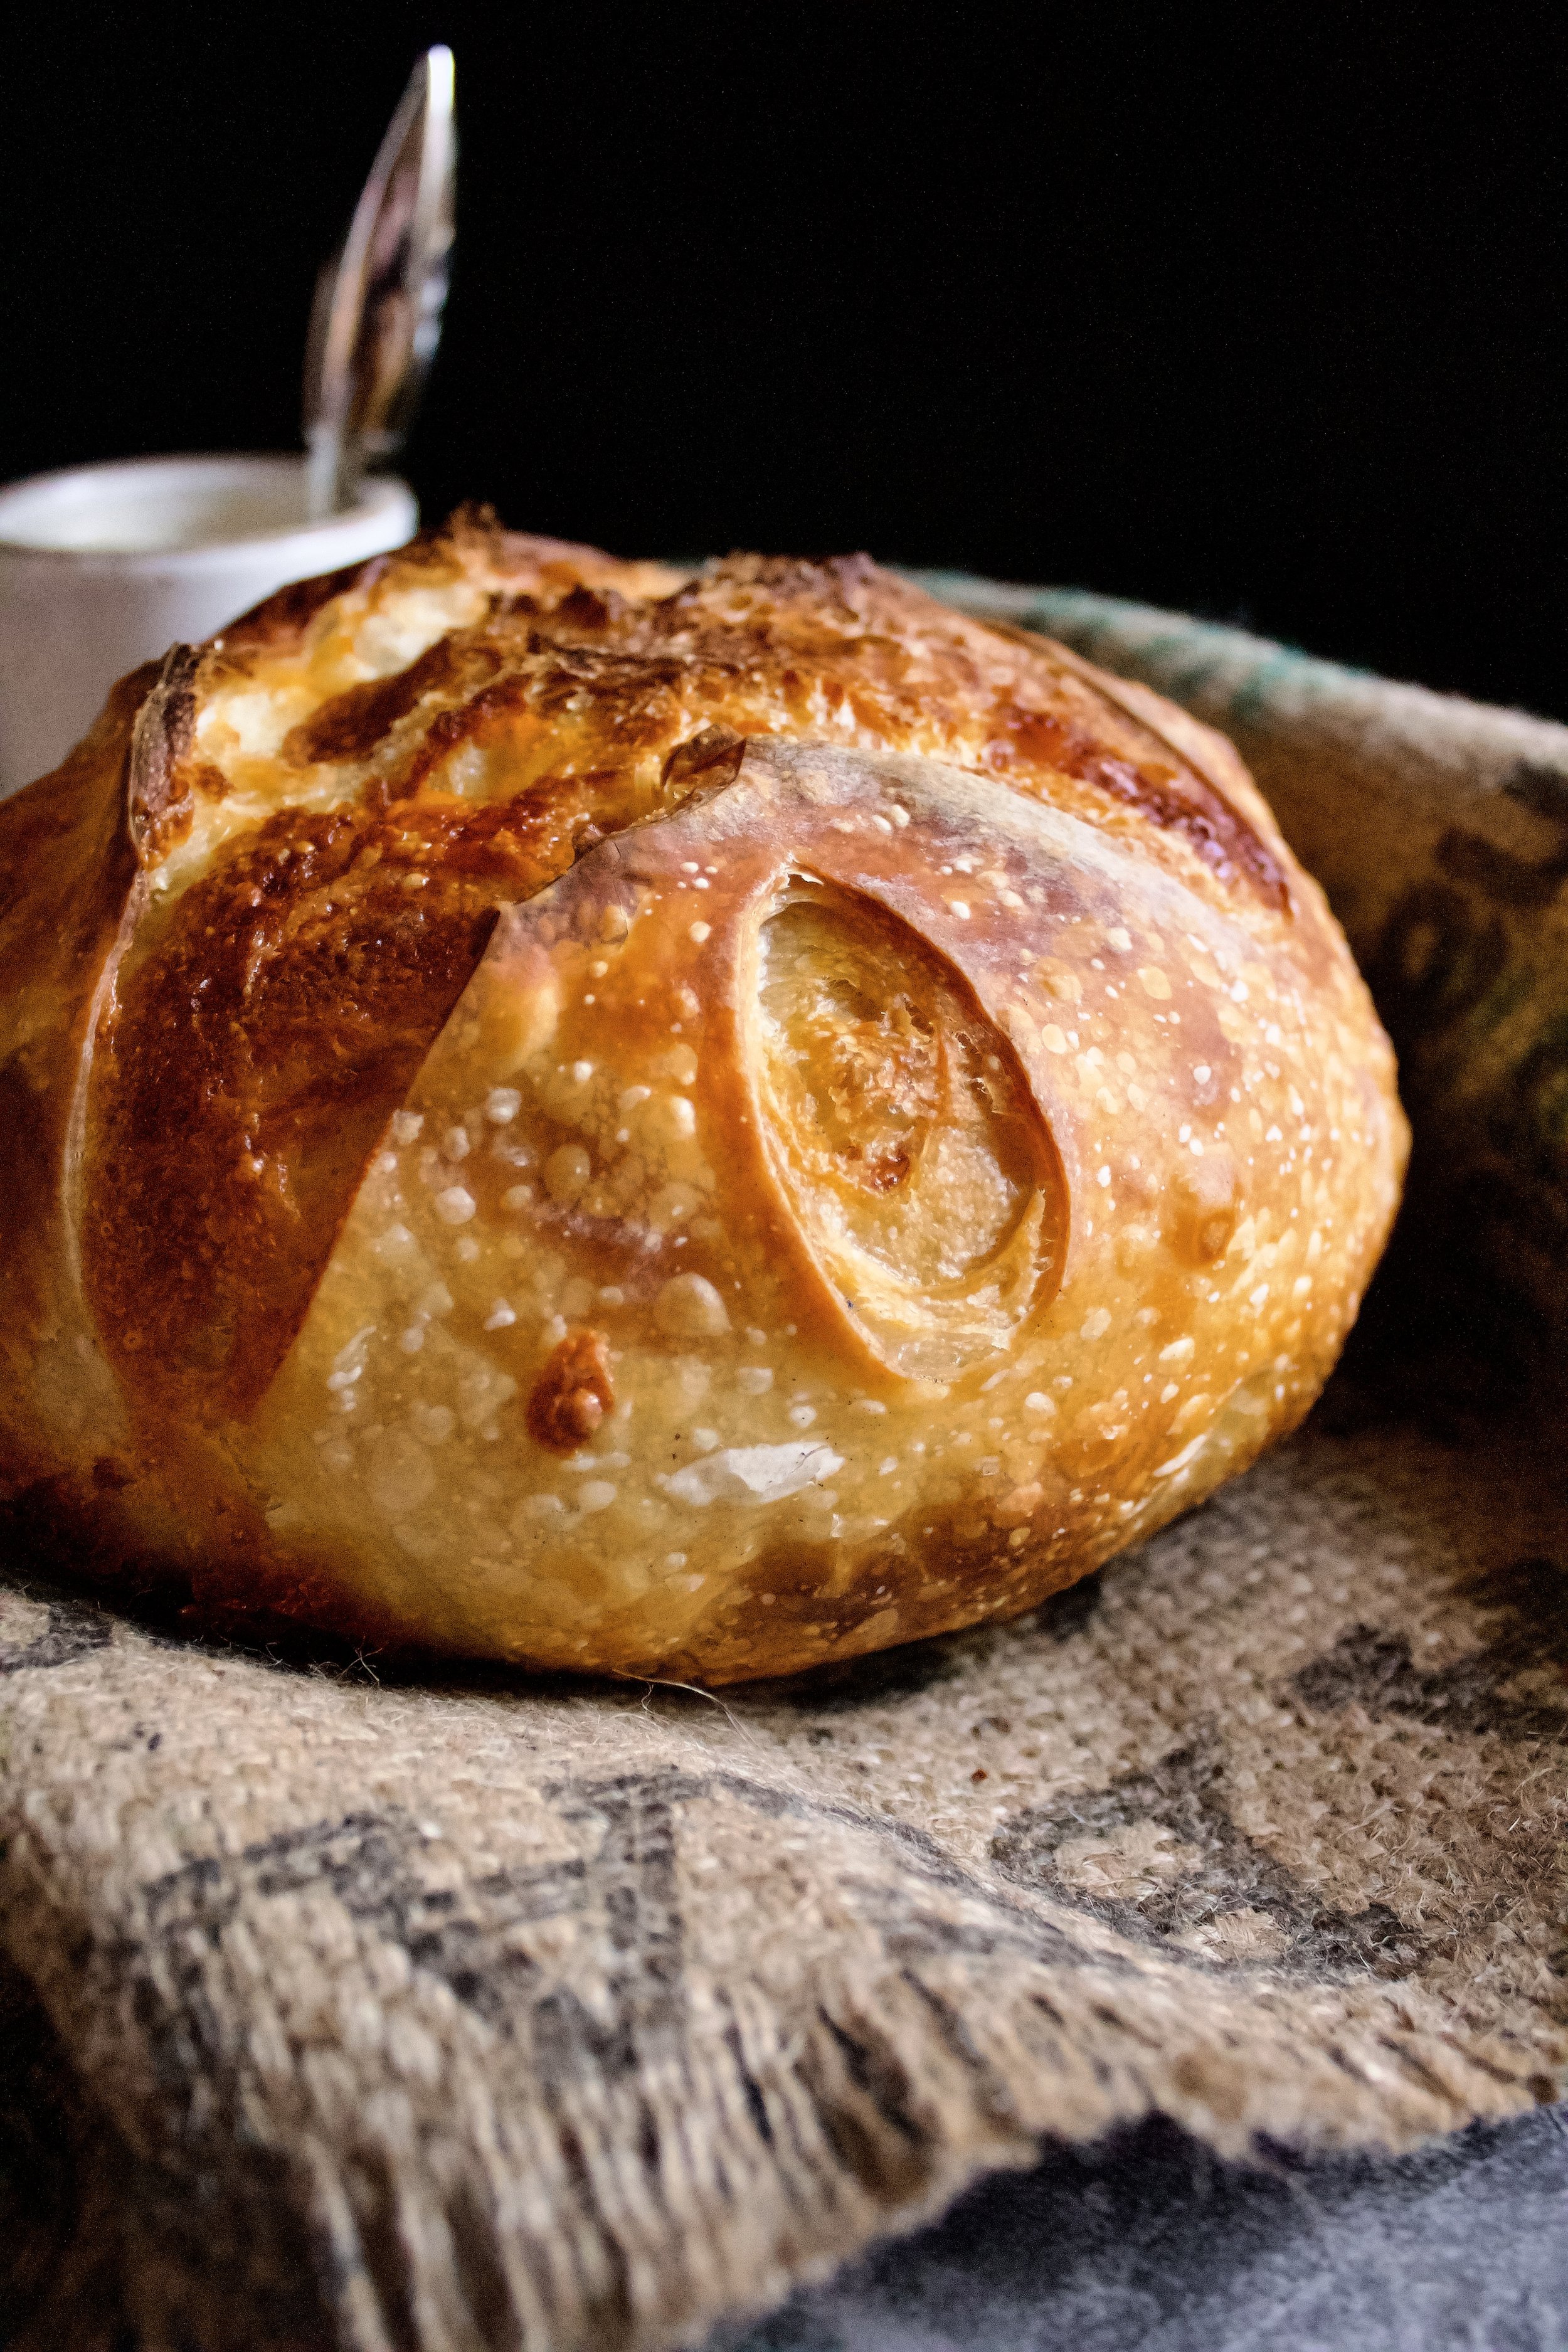 Wrapped Sourdough Bread Recipe